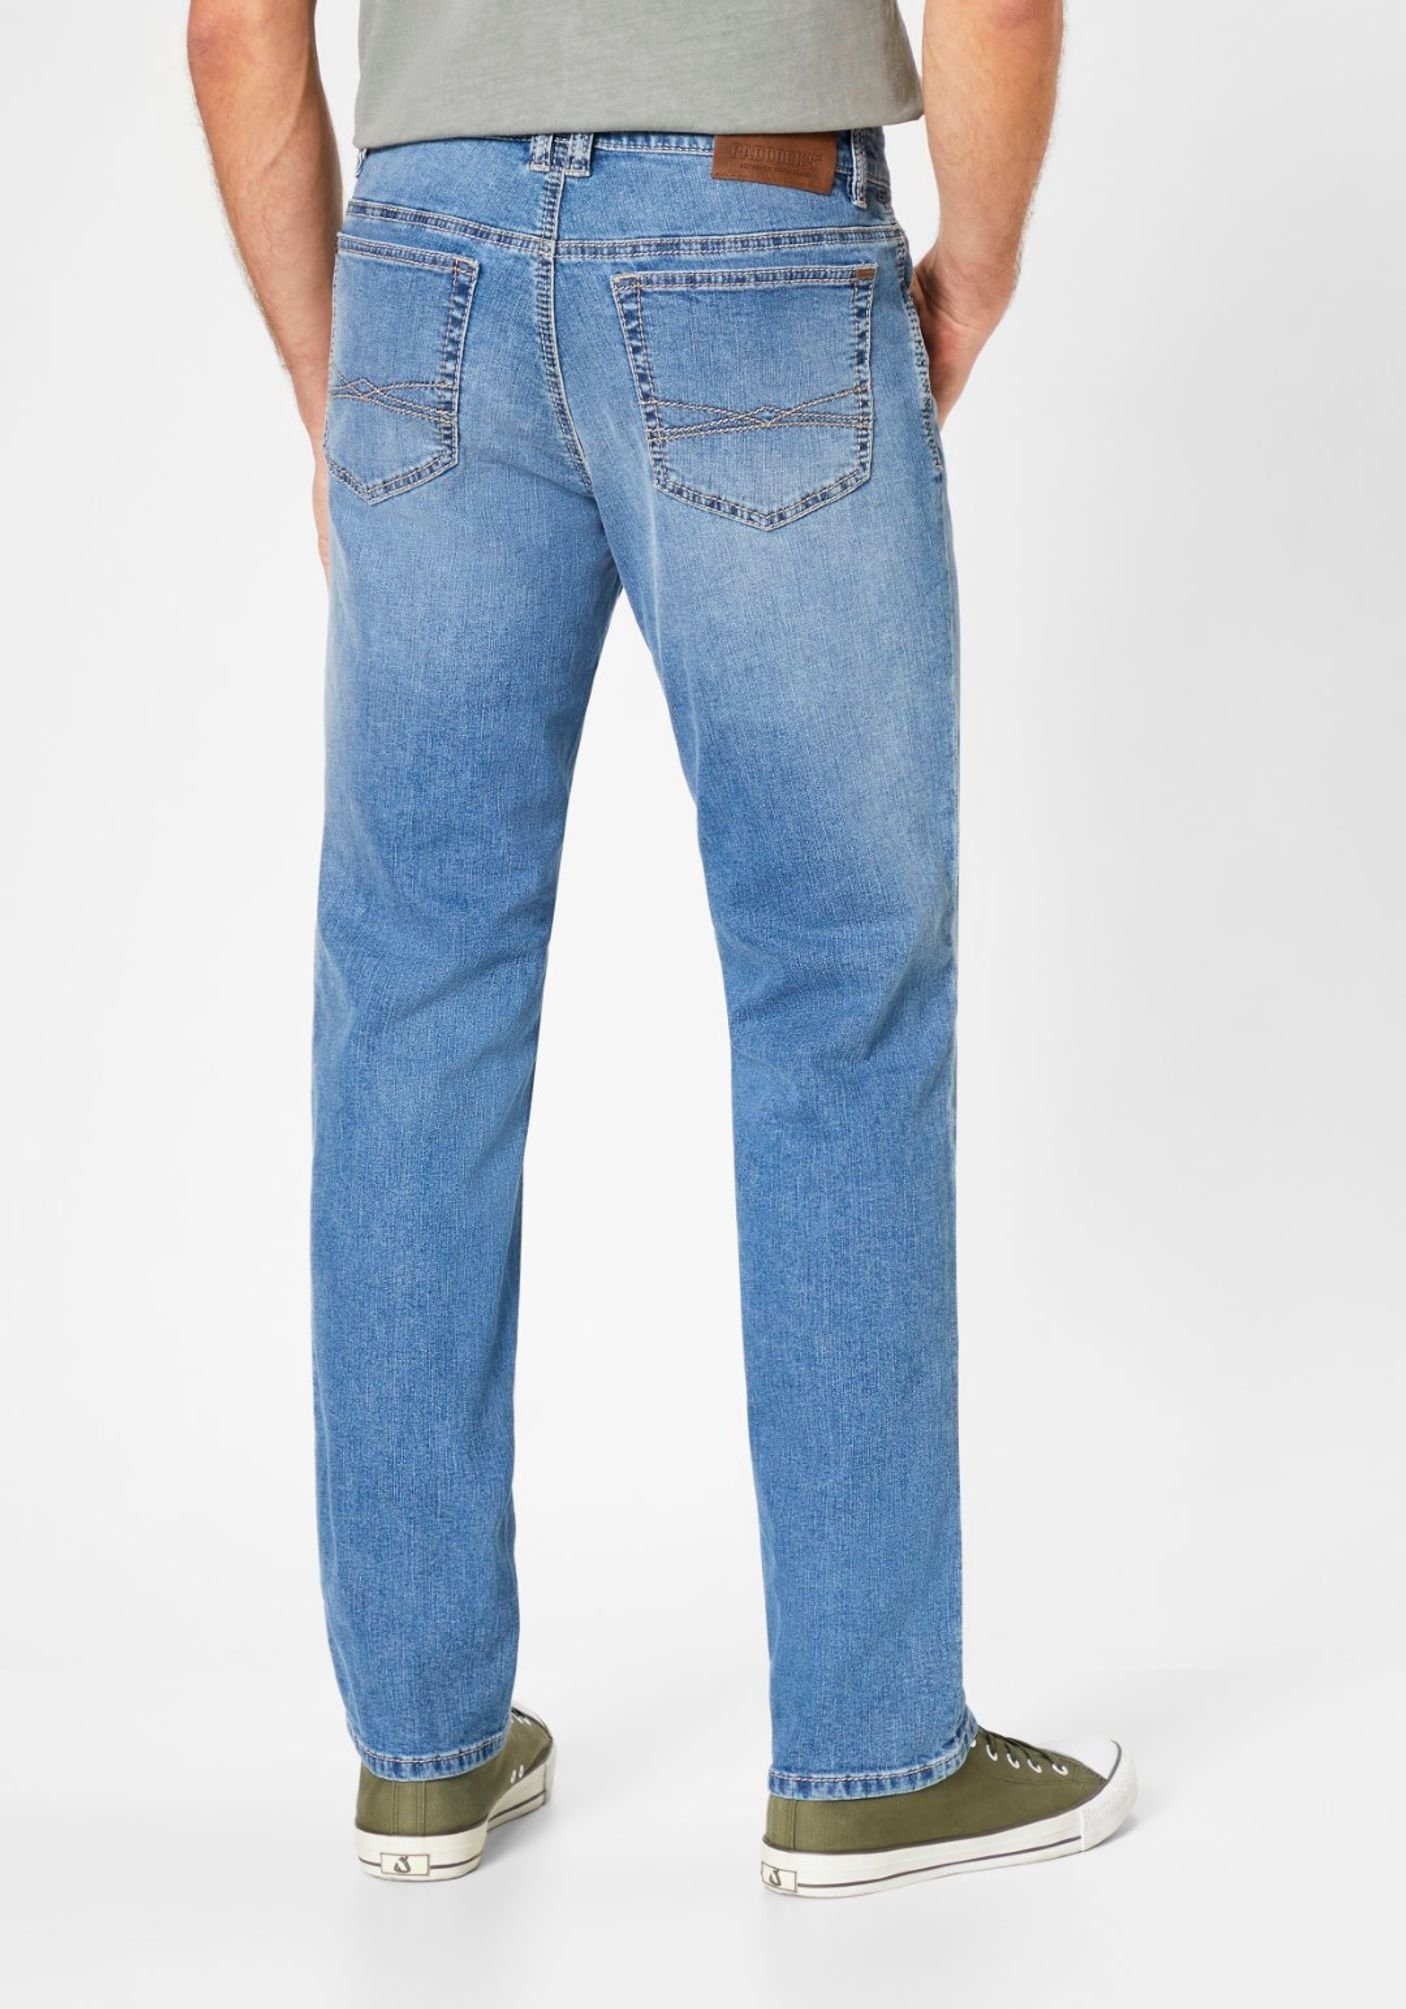 light Paddock's 80227 blue 000 5-Pocket-Jeans (4479) use 6734